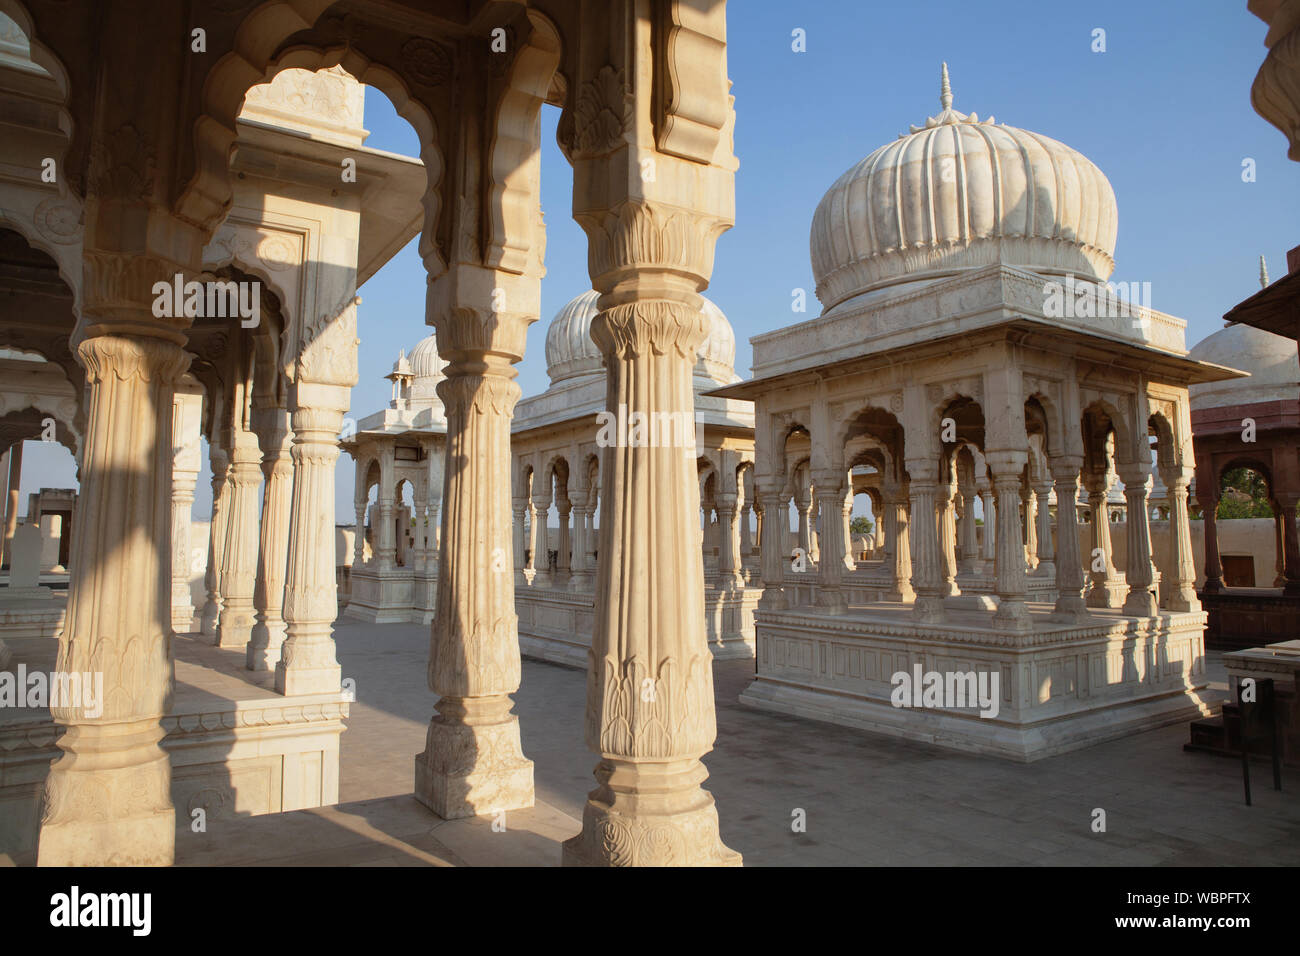 India, Rajasthan, Bikaner, Royal Cenotaphs at Devikund near Bikaner. Stock Photo